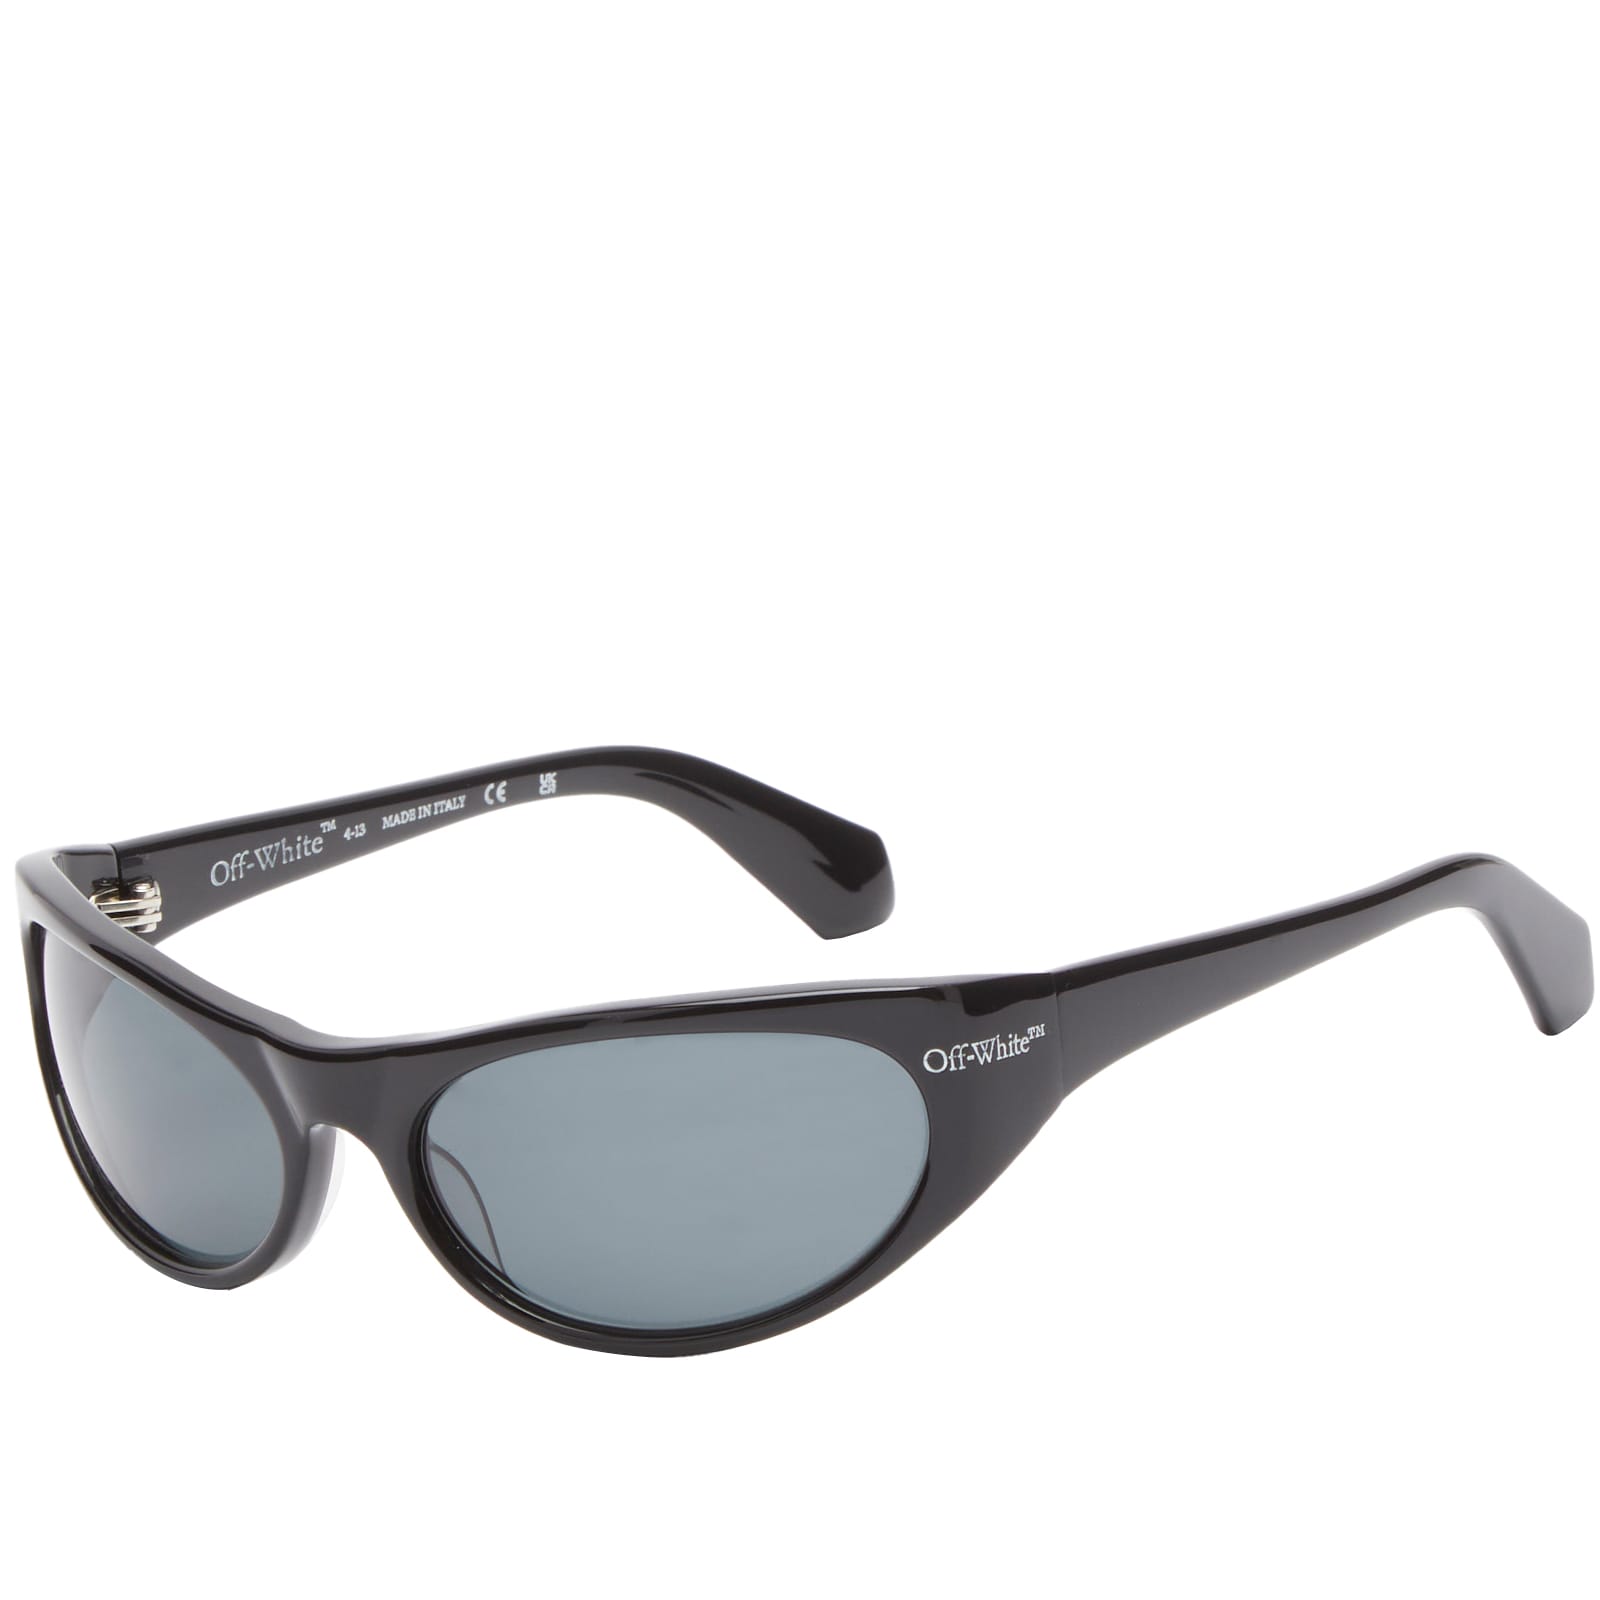 мужские солнцезащитные очки off white черные oeri094f23pla0010107 черный Солнцезащитные очки Off-White Napoli, черный